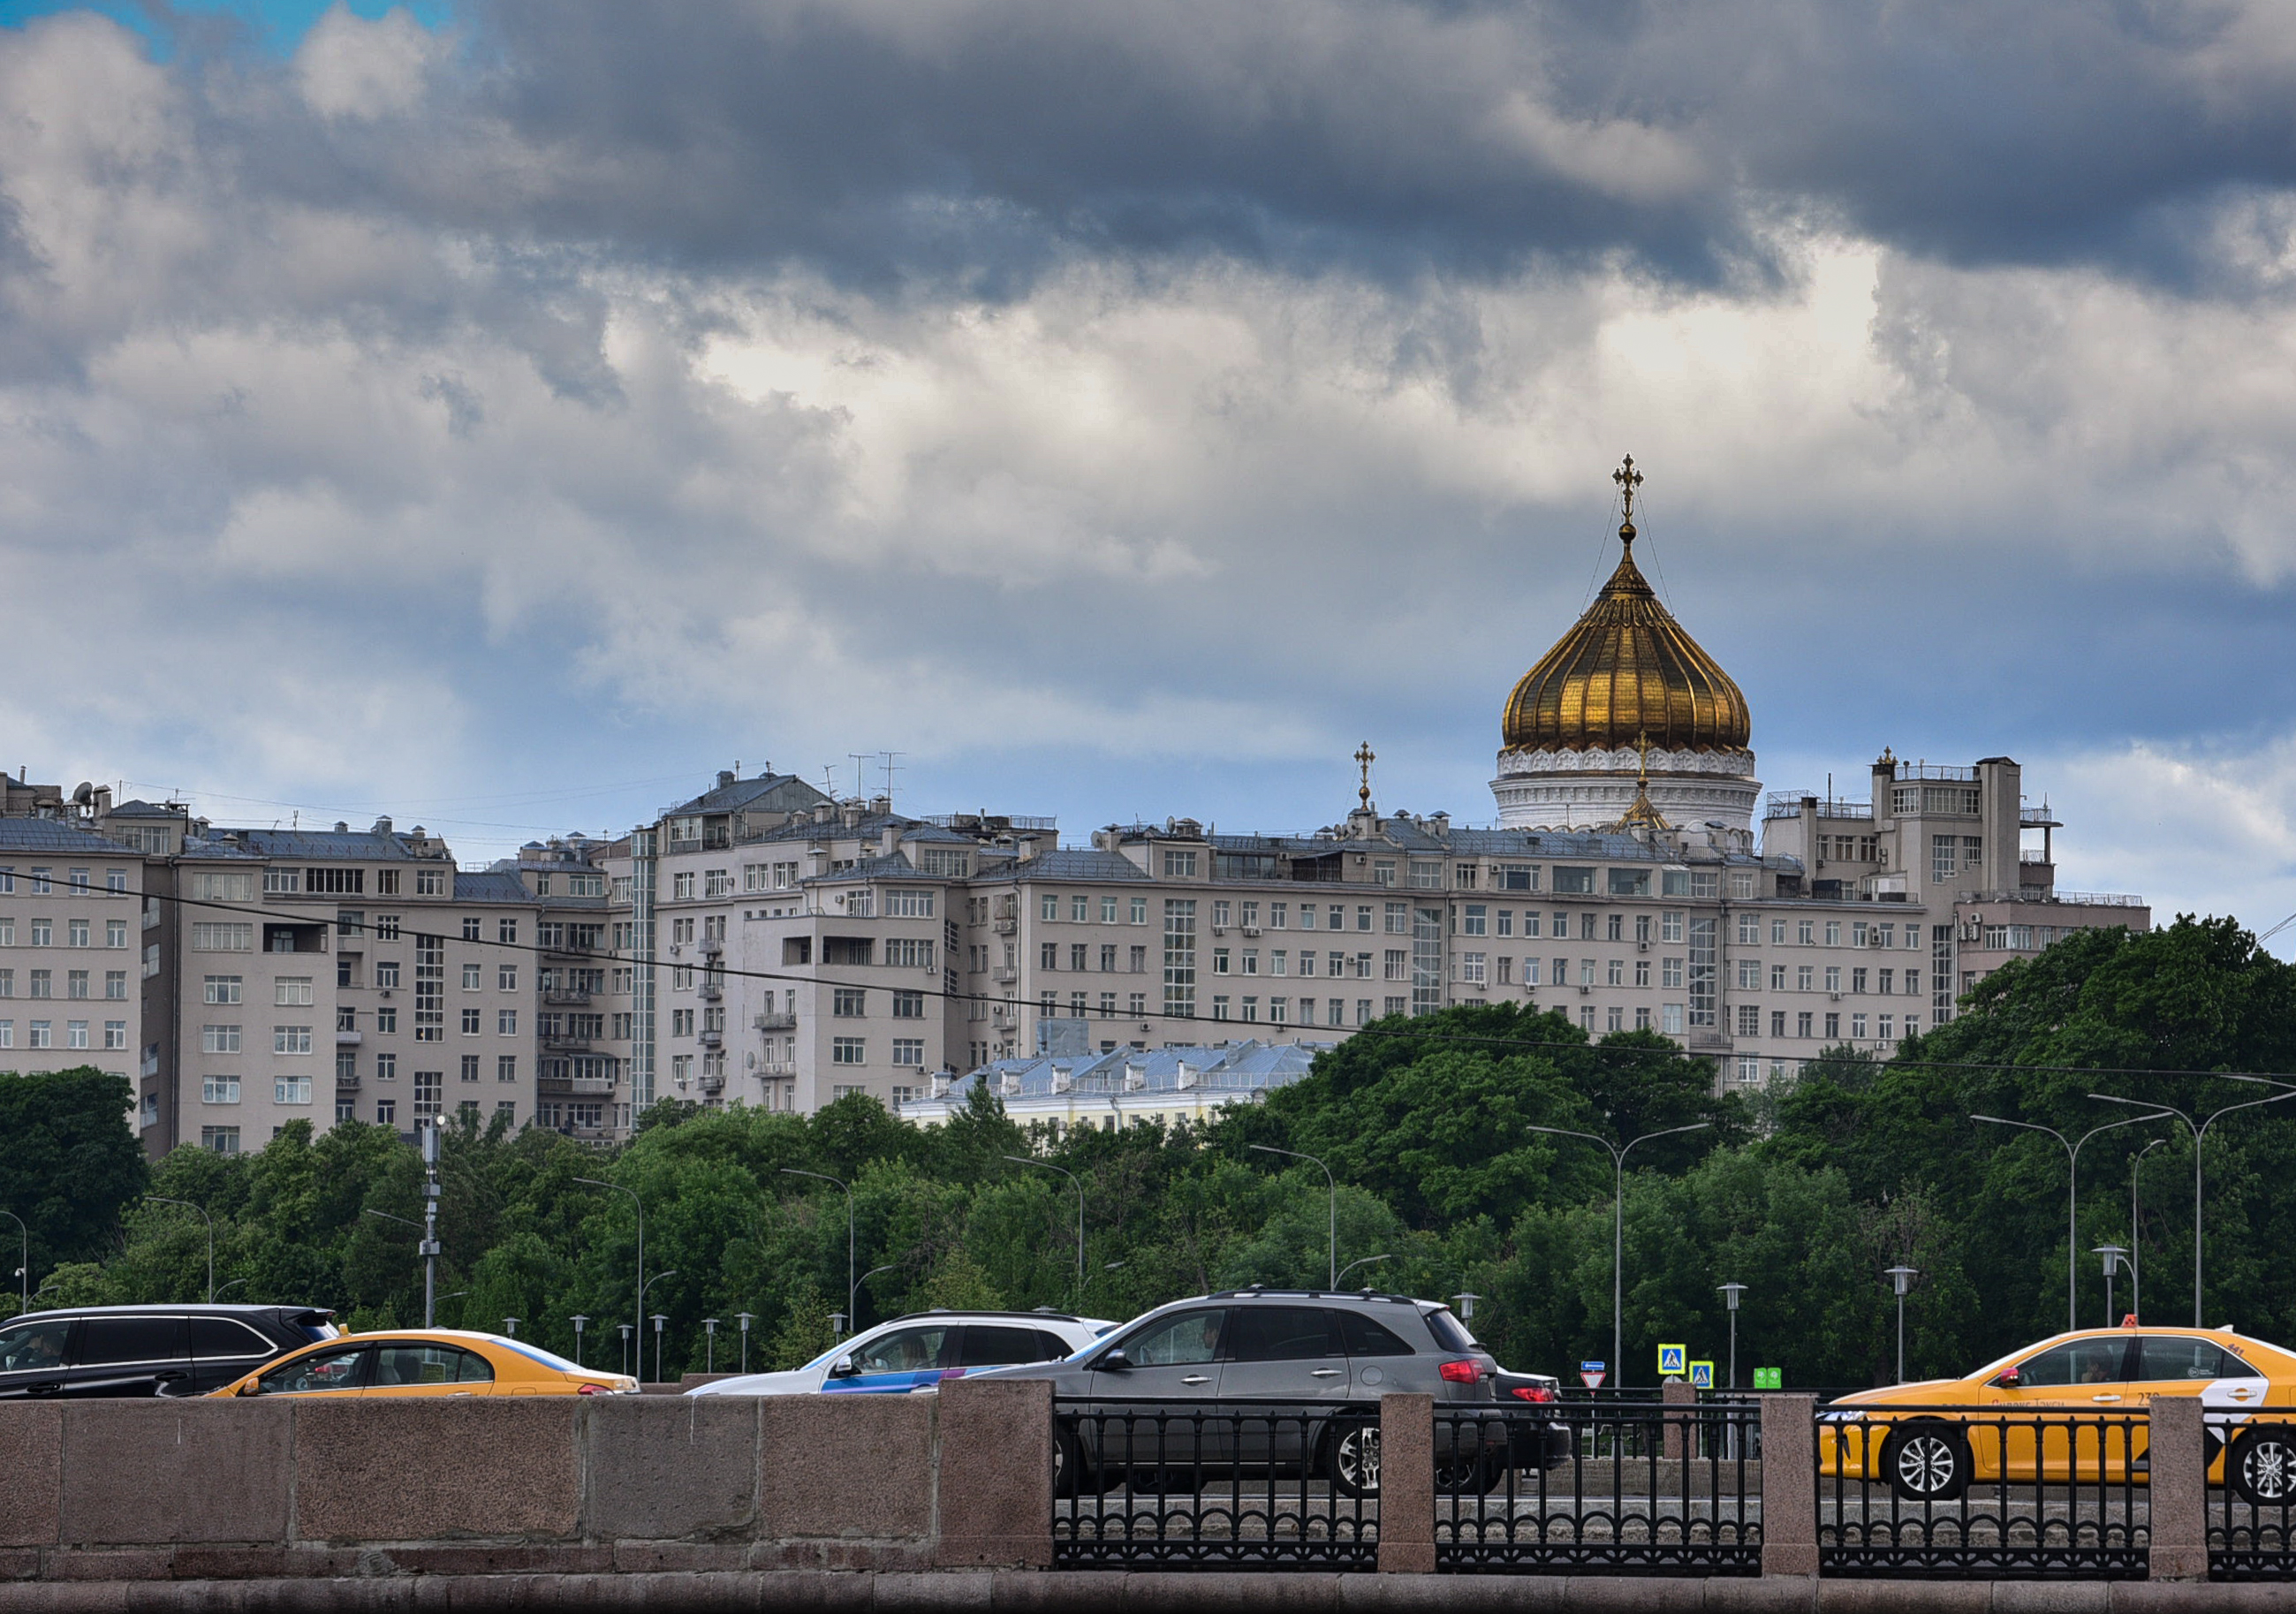 Погода опасна: во вторник Москву ждет ветер